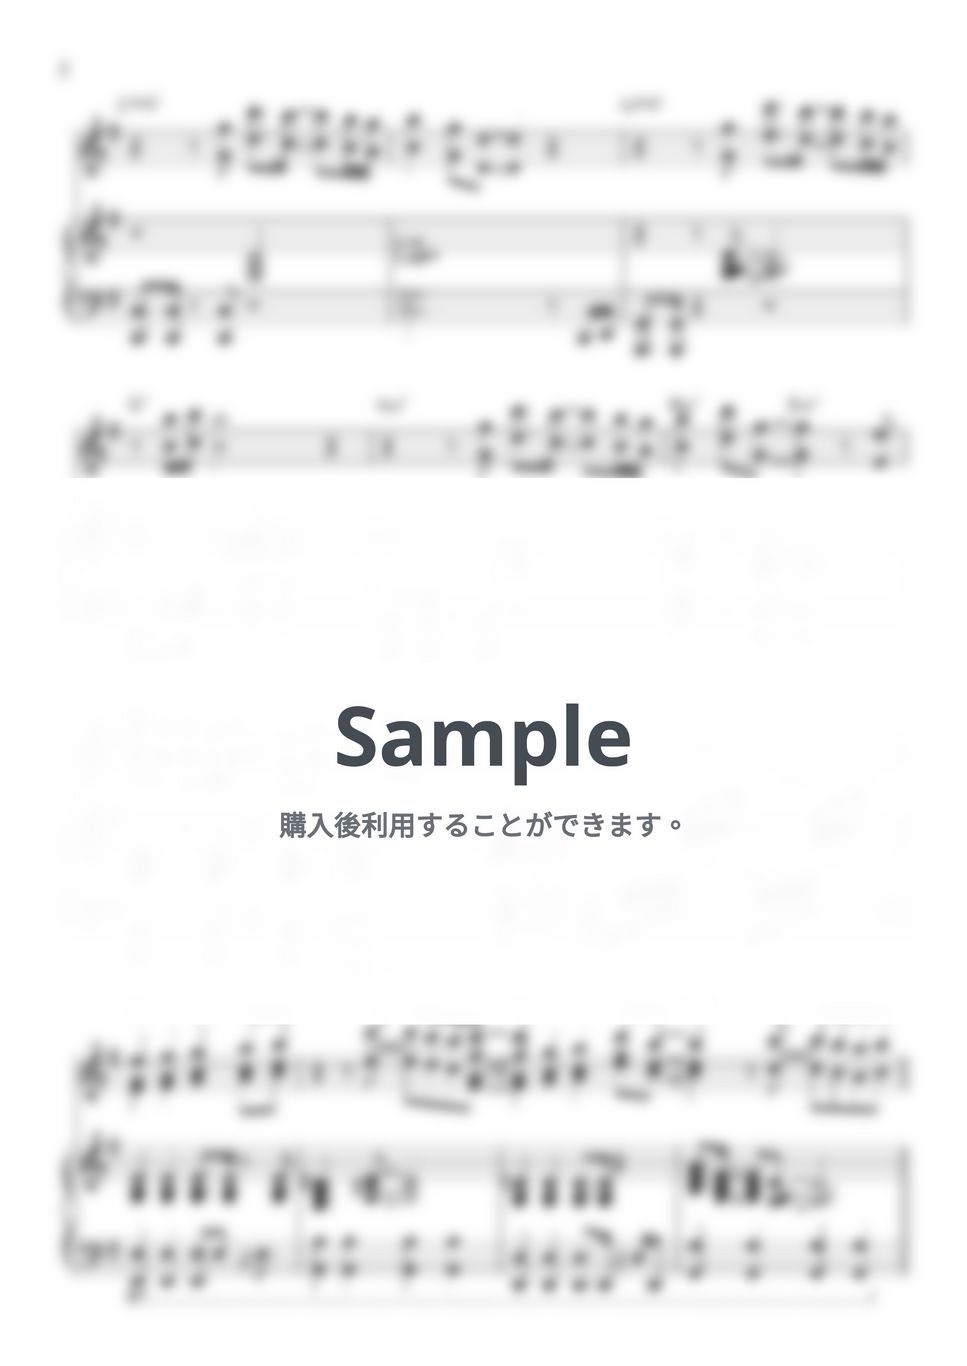 TXT - Fairy of Shampoo G key (Piano Duo) by 247KpopPiano